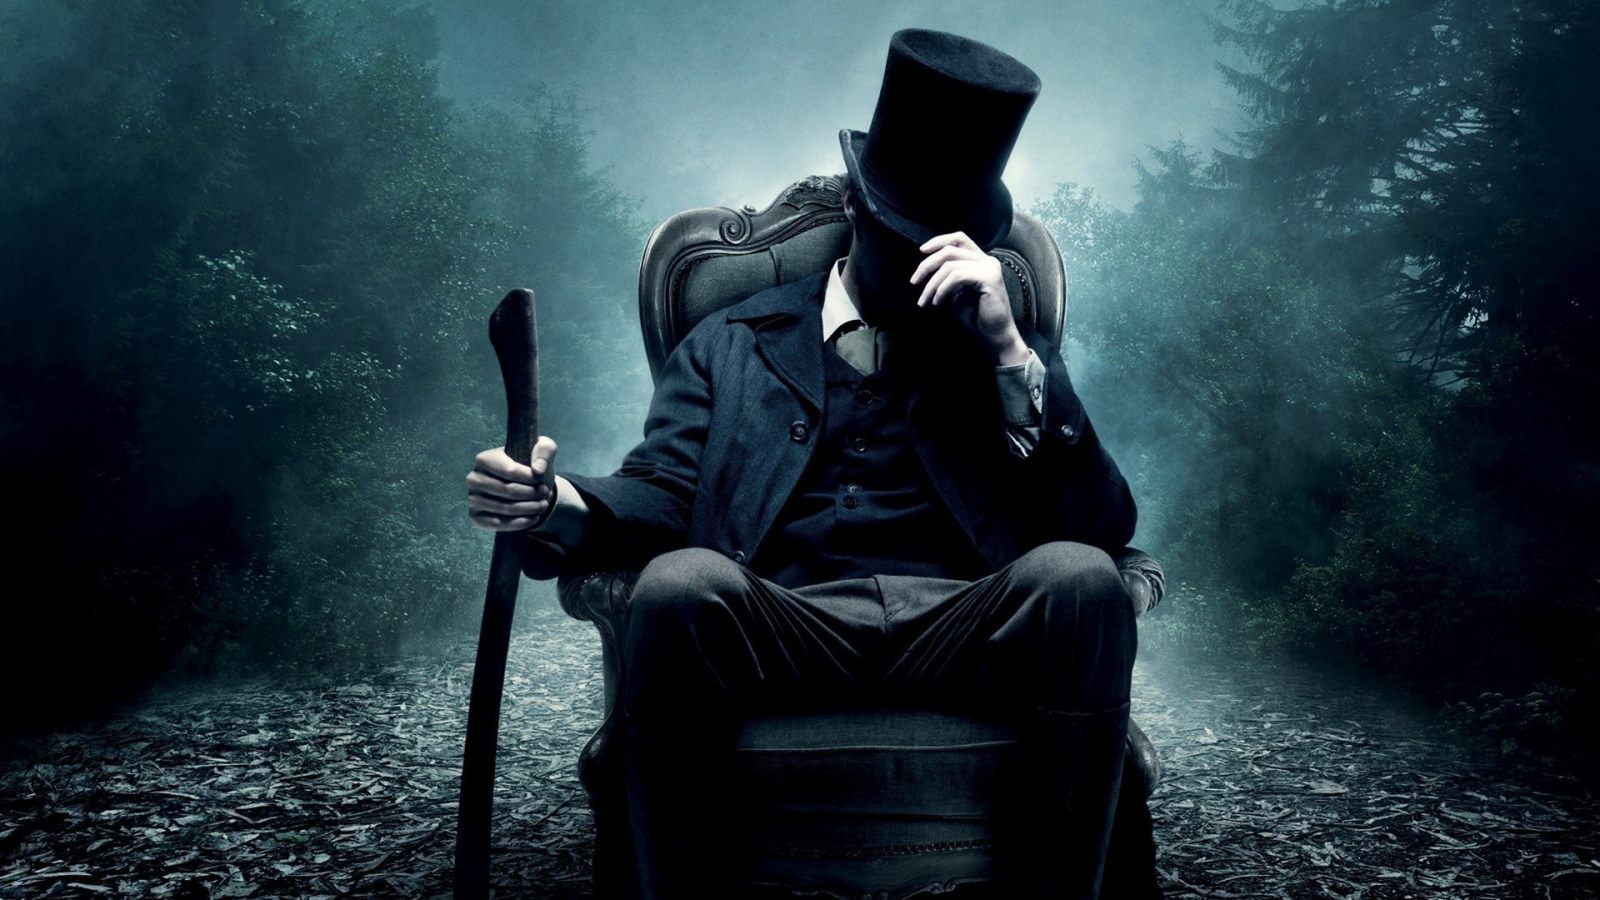 Abraham Lincoln Vampire Hunter for 1600 x 900 HDTV resolution